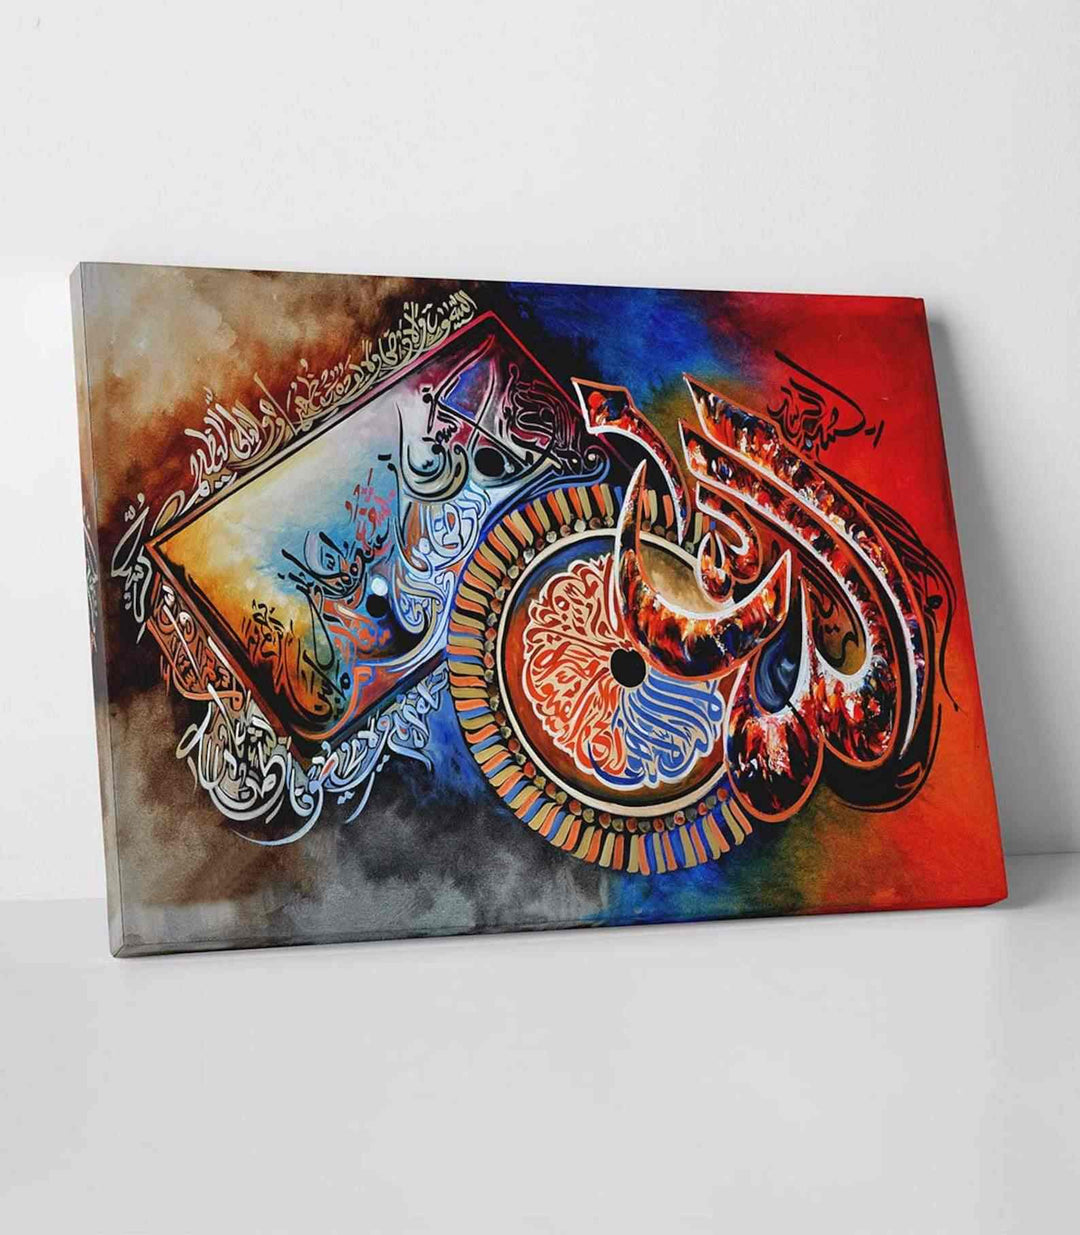 Ayatul Kursi v19 Oil Painting Reproduction Canvas Print Islamic Wall Art - Islamic Wall Art Store